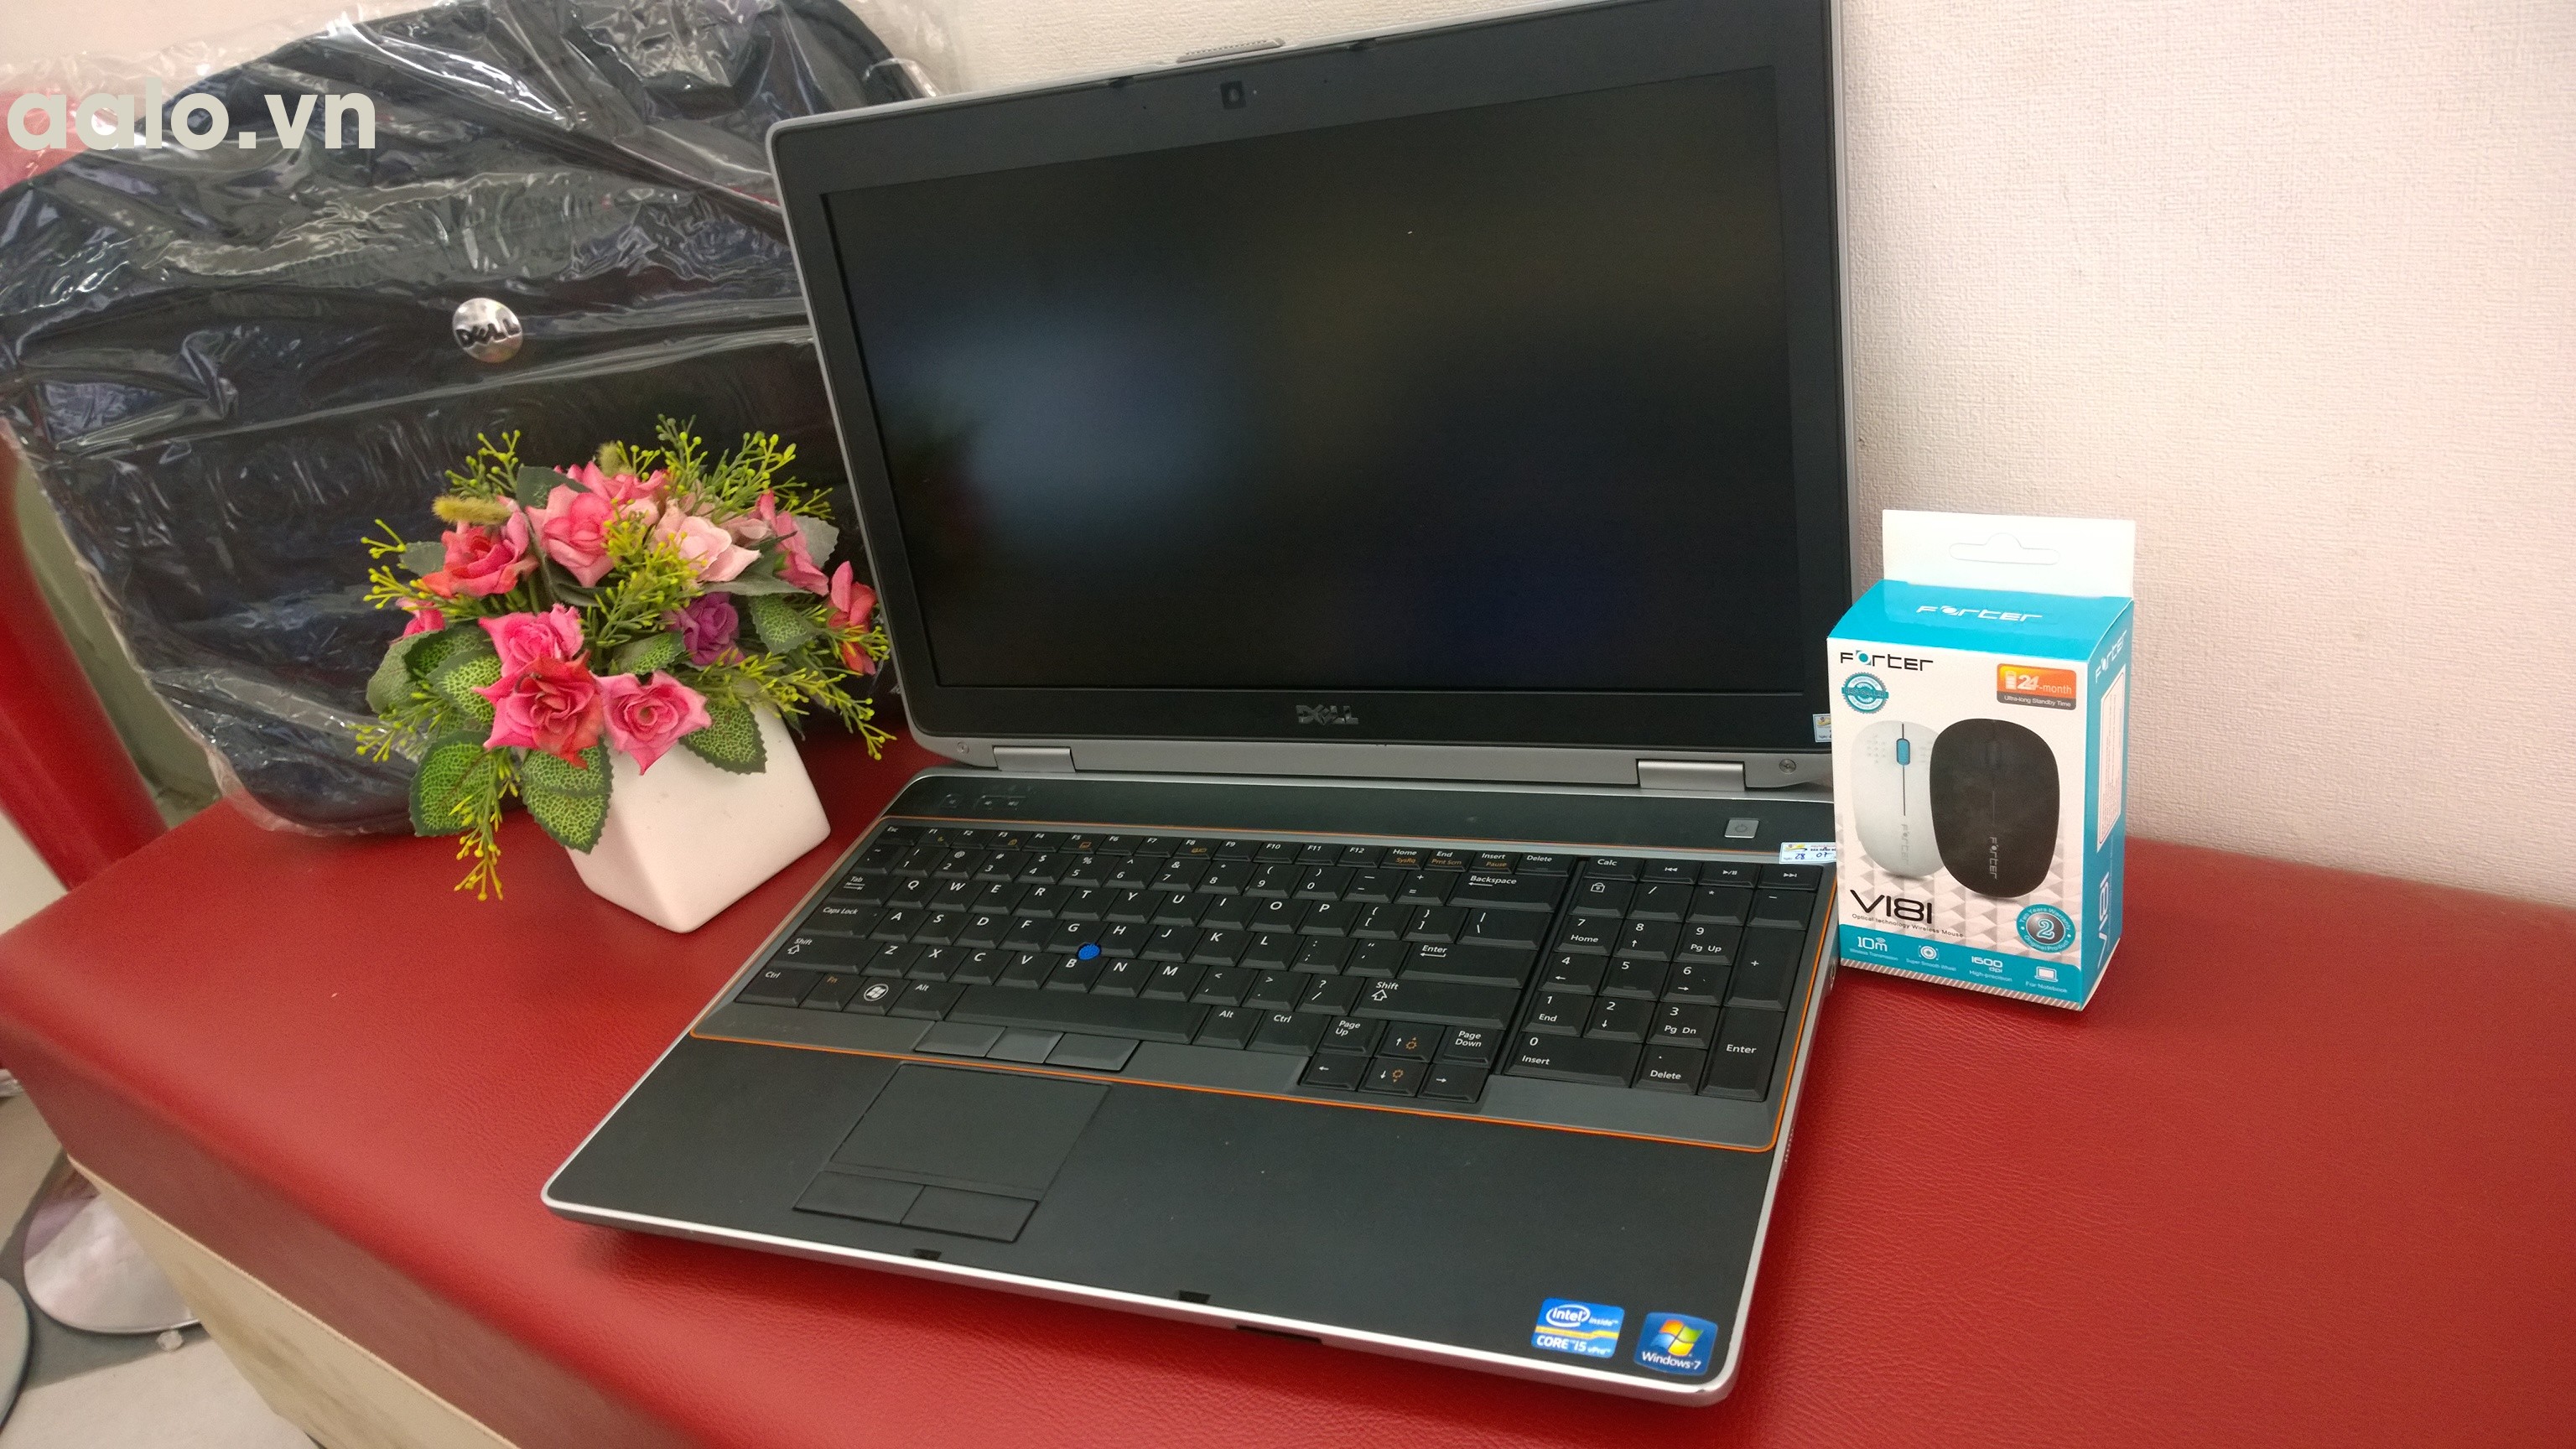 Laptop cũ Dell Latitude E6520 (Core i5 2520M, 4GB, 250GB, VGA Intel HD Graphics 3000, 15.6 inch) - bảo hành 1 năm